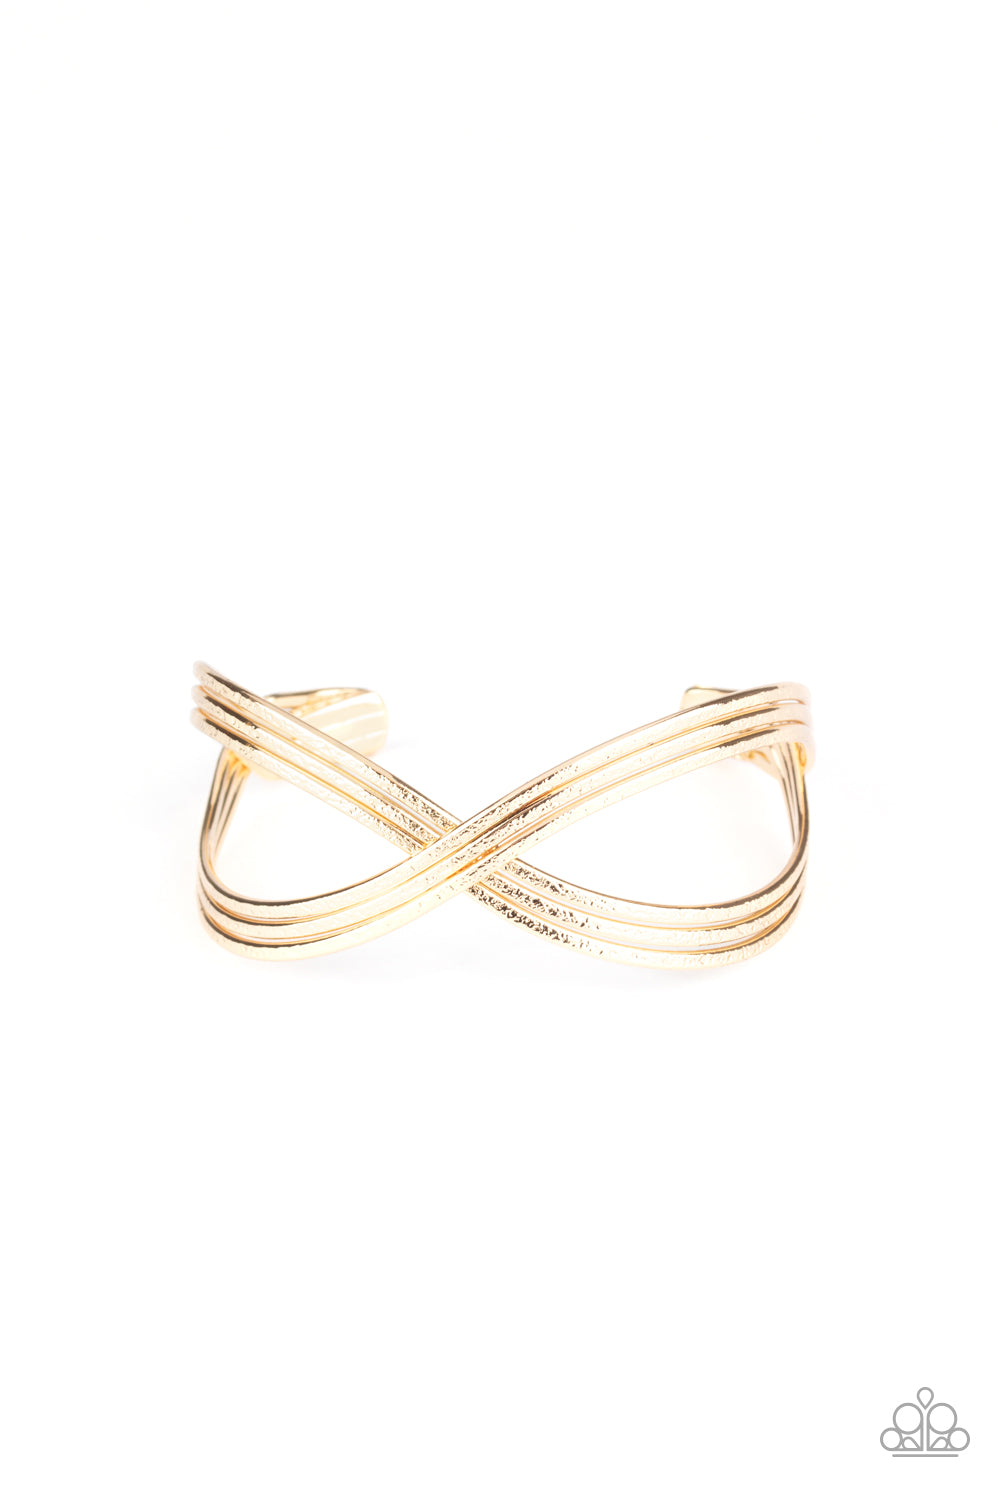 infinitely Iridescent Gold Bracelet